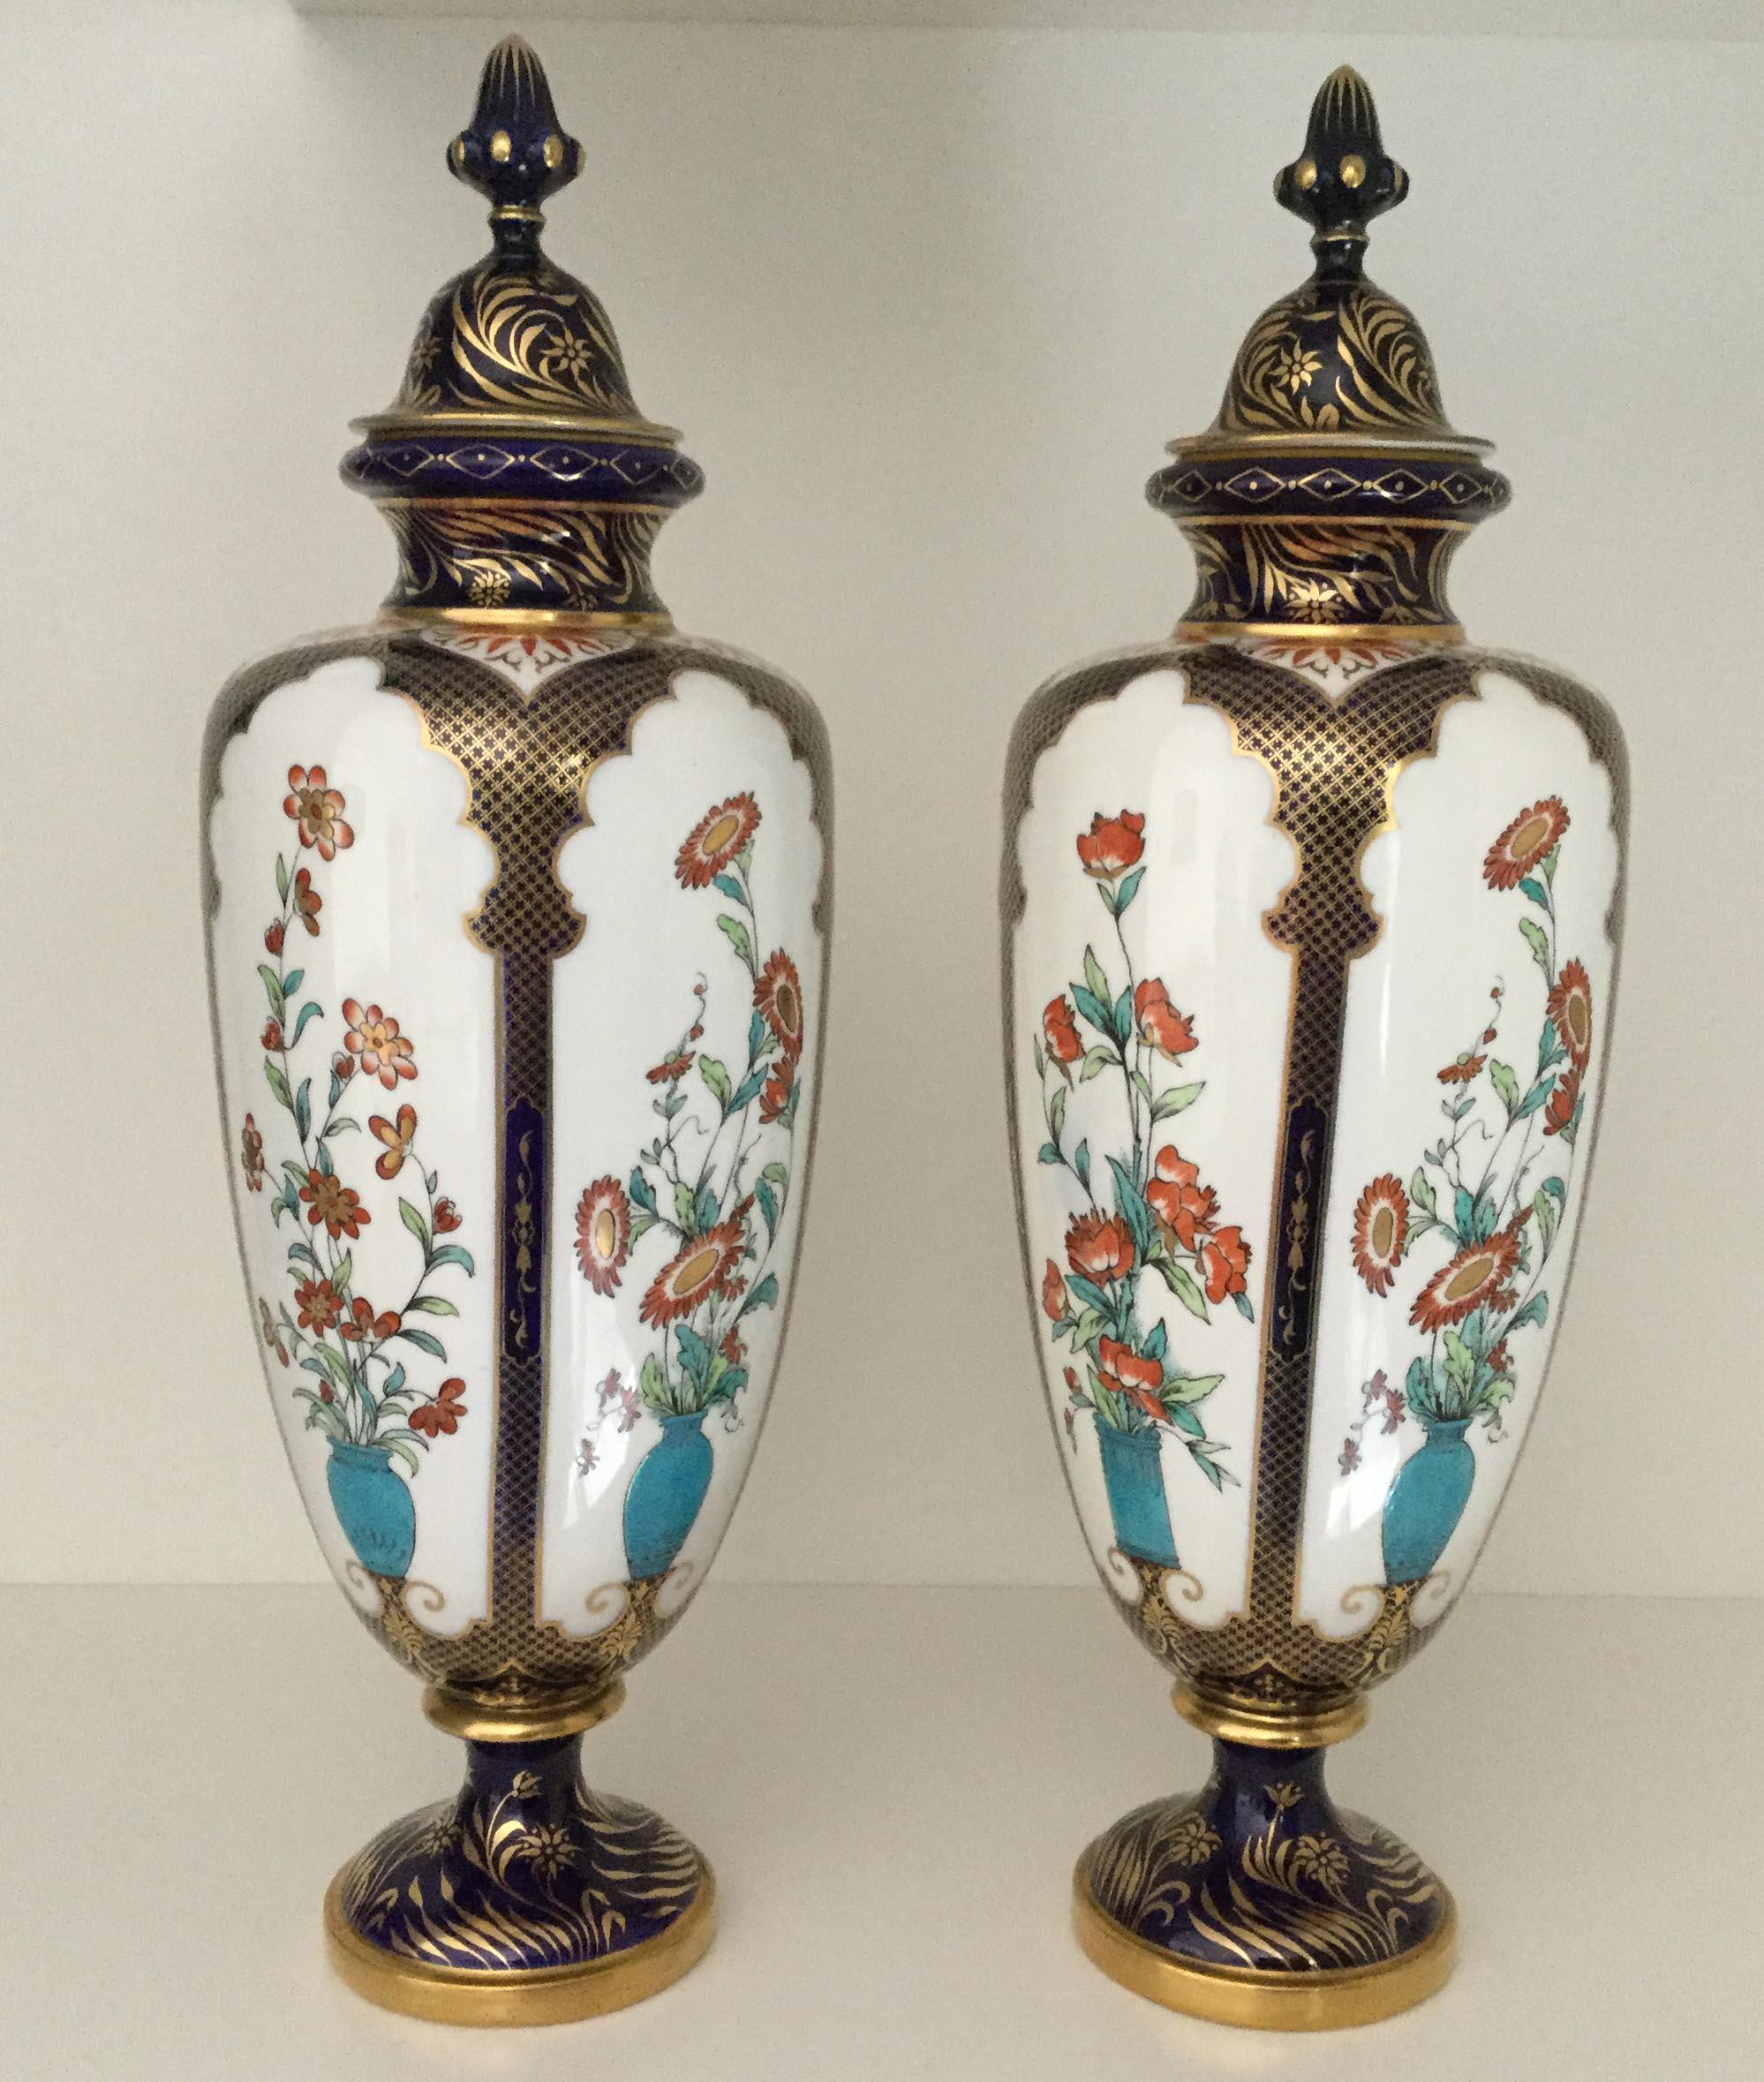 Ein seltenes Paar dekorativer Royal Worcester-Porzellanvasen aus dem 19. Jahrhundert, die im japanischen Stil dekoriert sind, datiert 1896-1897.

Jede Vase ist mit fünf weißen Tafeln verziert, die bunte rote Blumen in türkisfarbenen Urnen